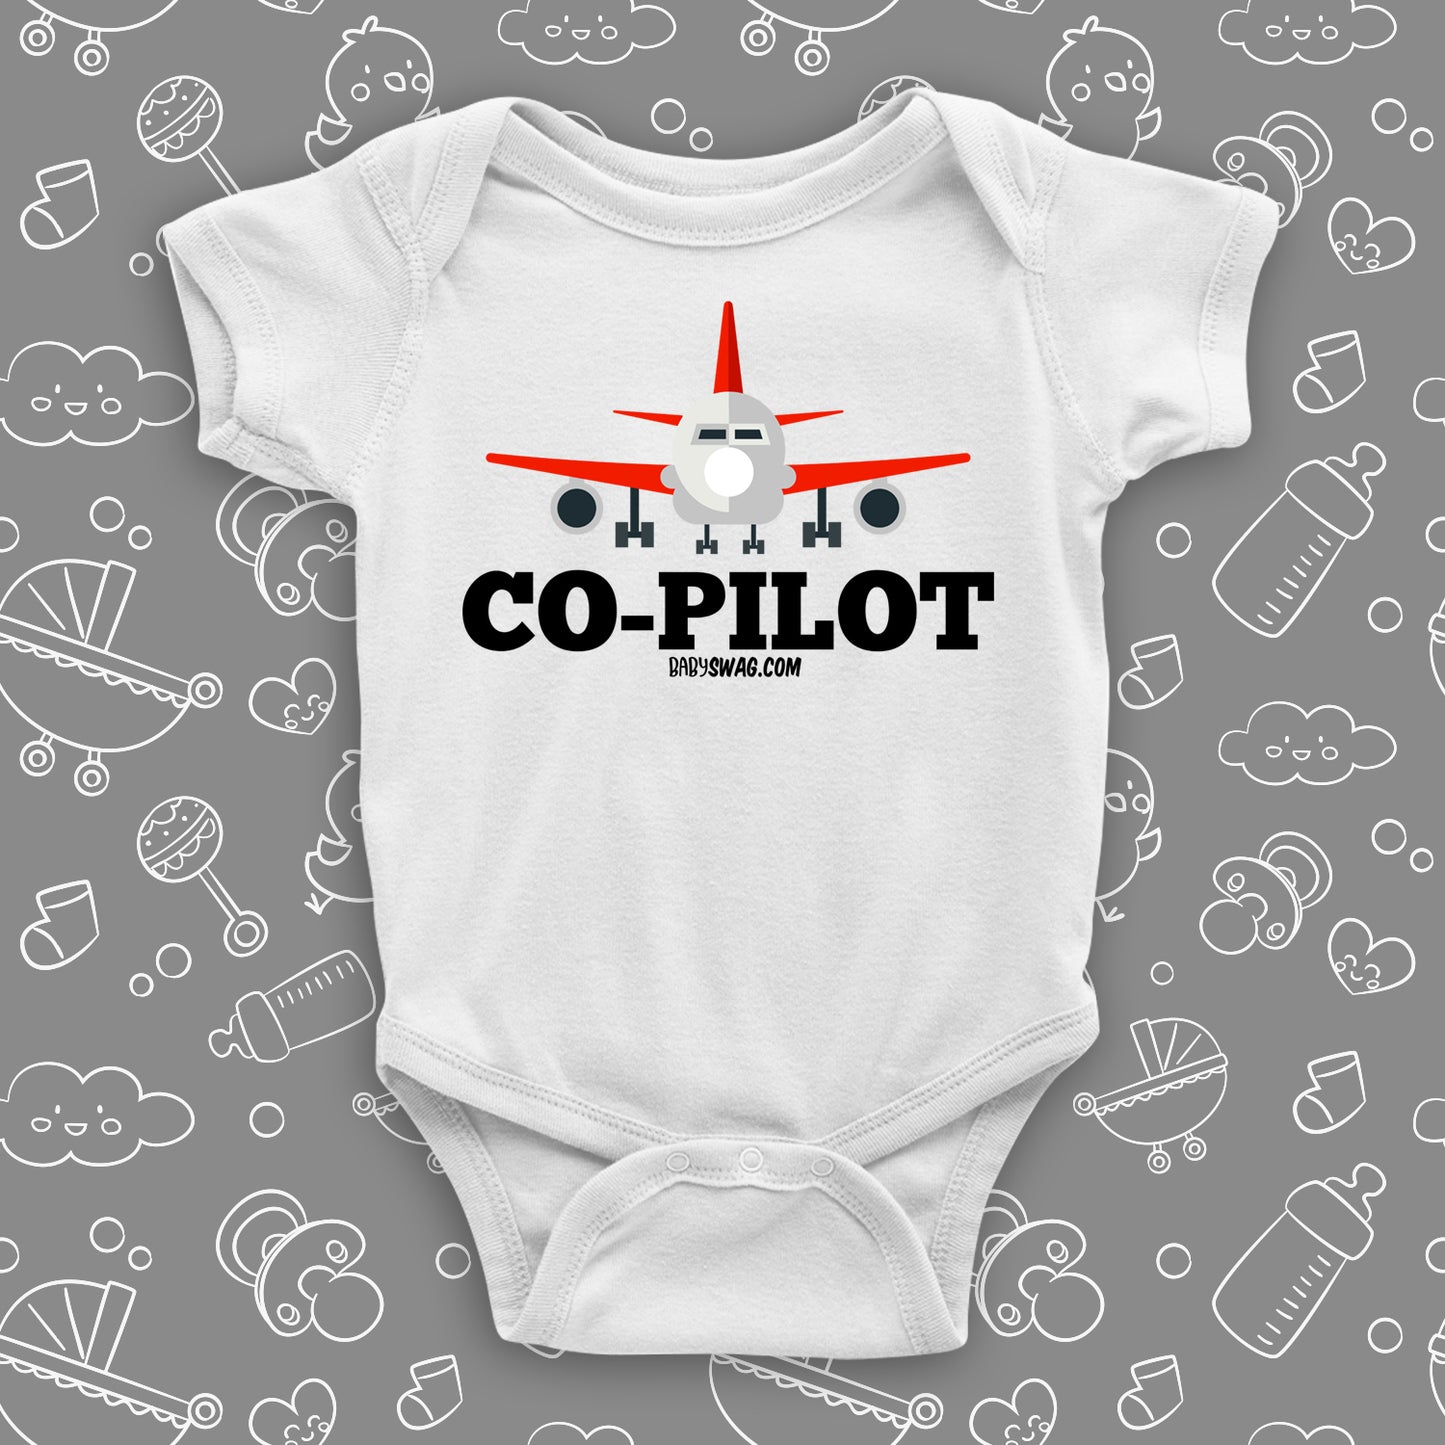 Co-Pilot